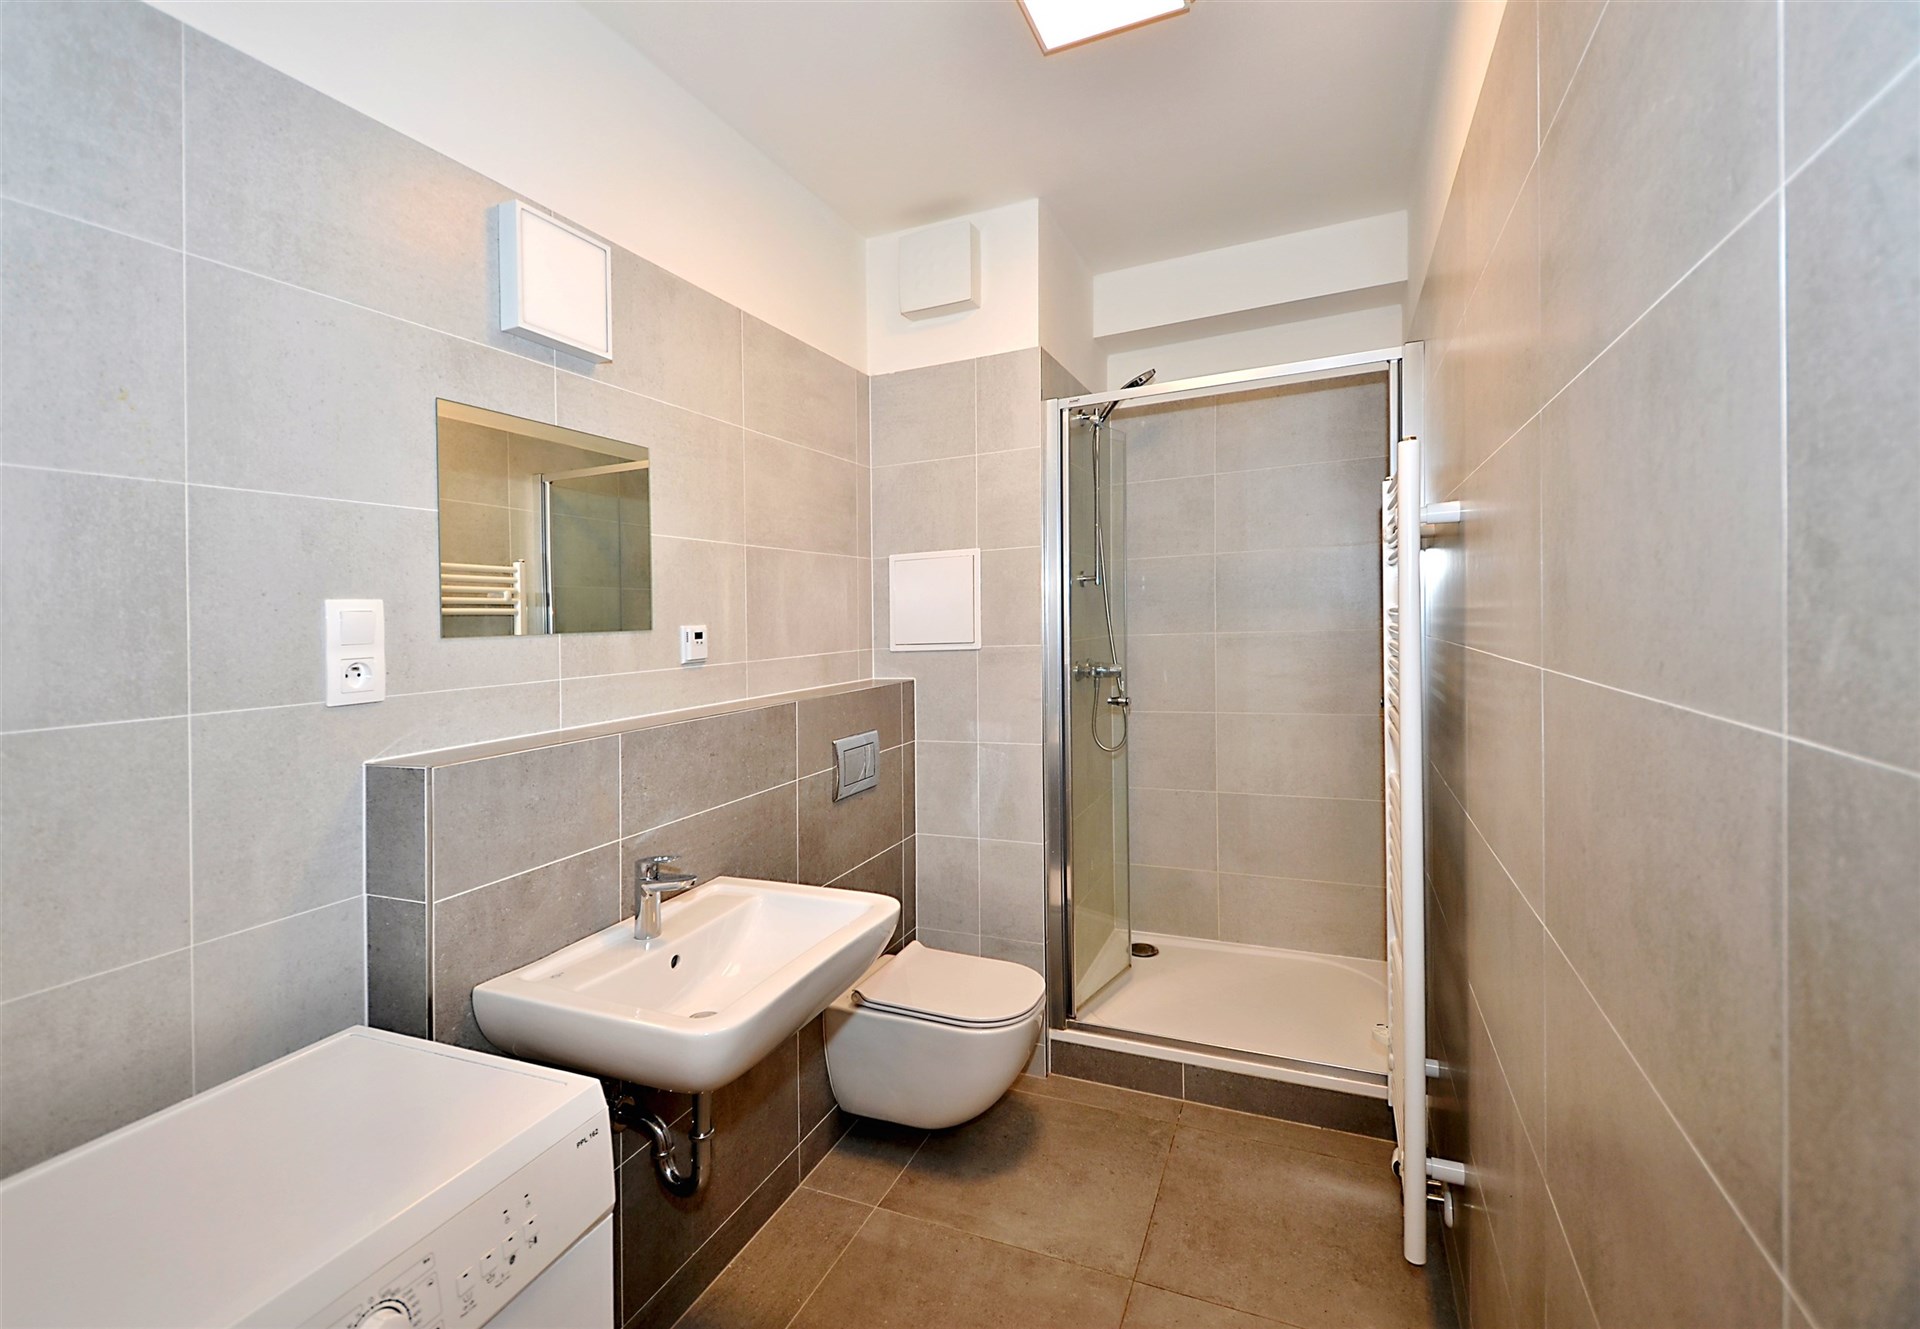 vana s stěna dlaždic, zrcadlo, kachličková podlaha, dřez, a sprcha